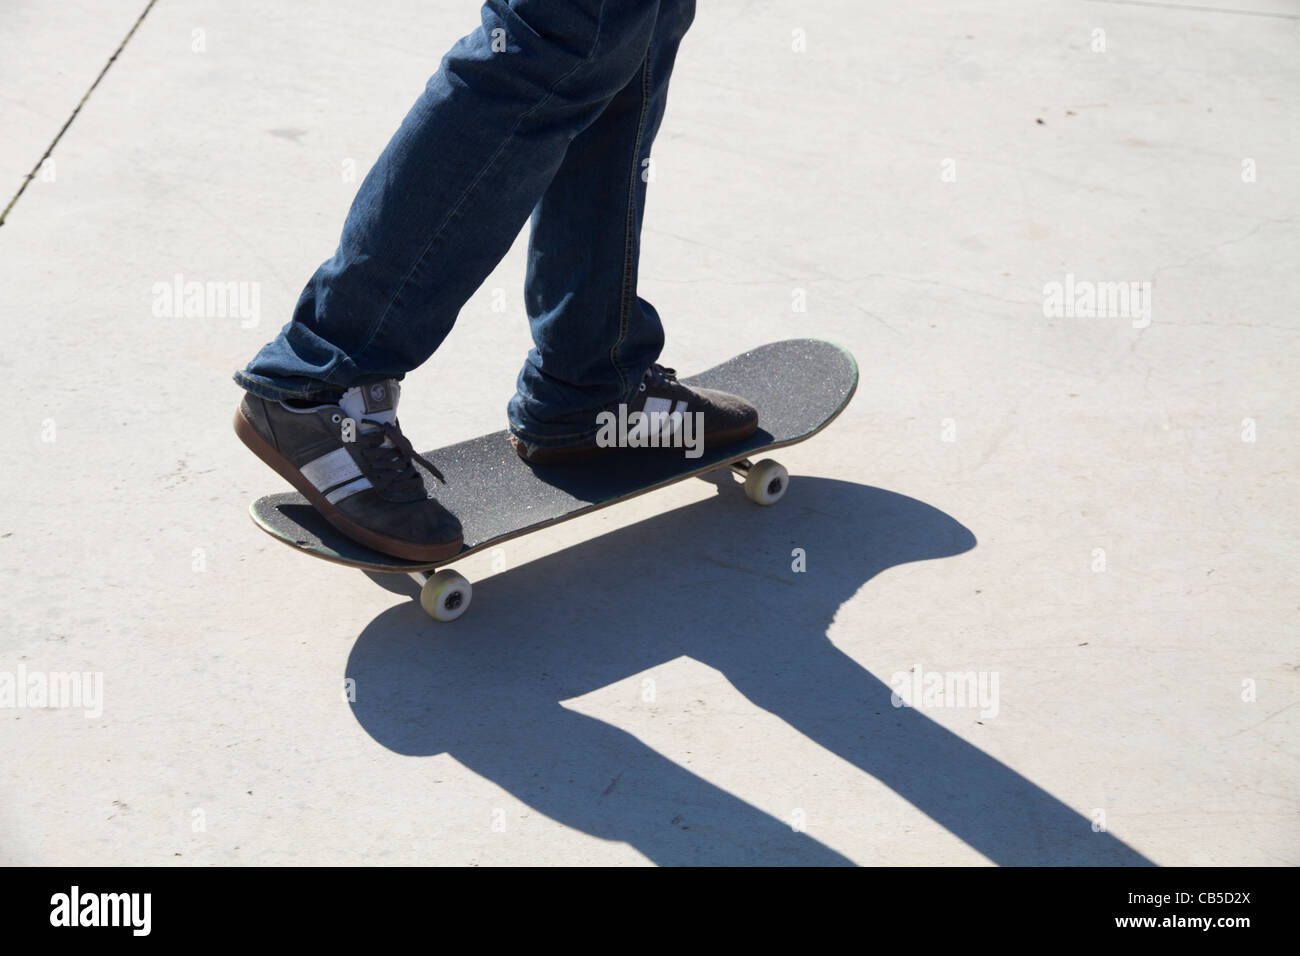 Persona en patineta skateboarding en action sport Foto de stock